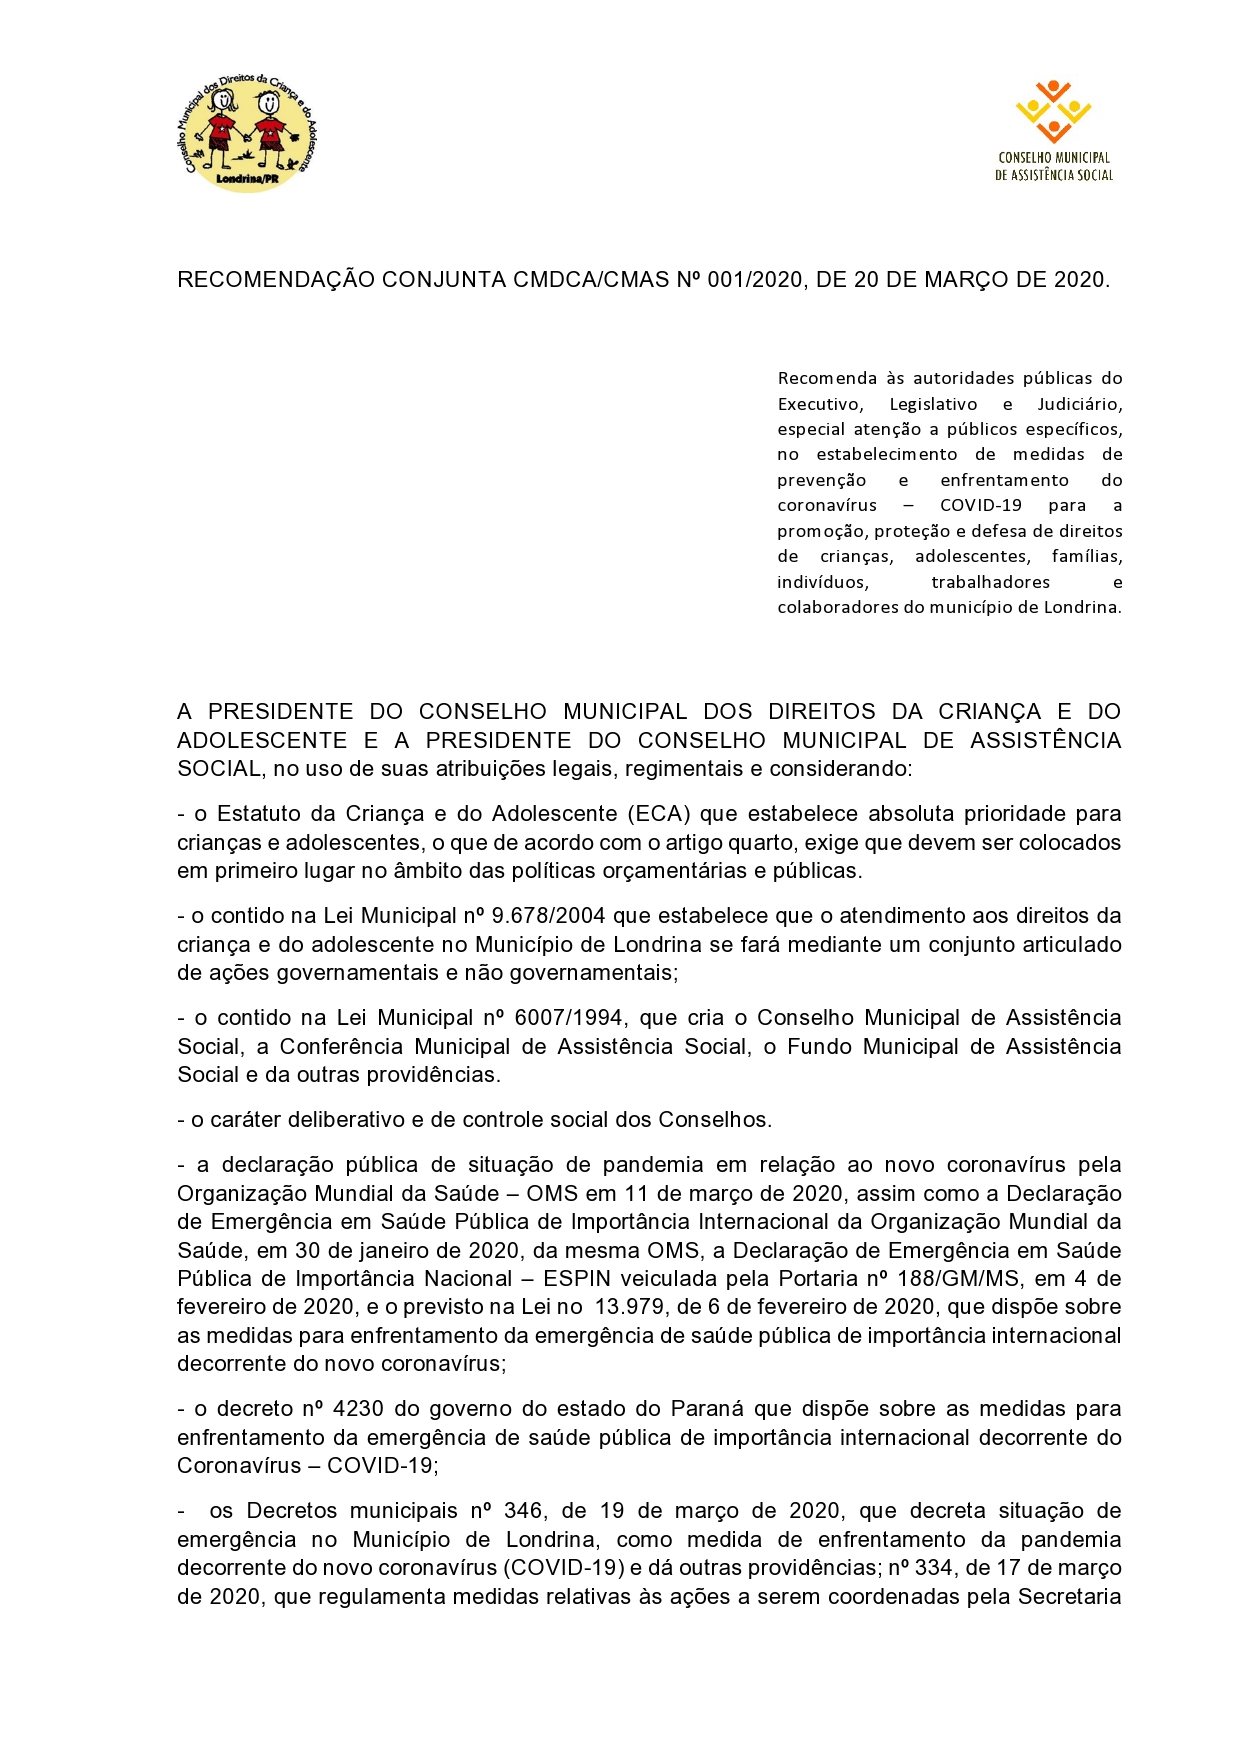 RECOMENDAÇÃO CONJUNTA CMDCA CMAS nº 001 2020 page0001